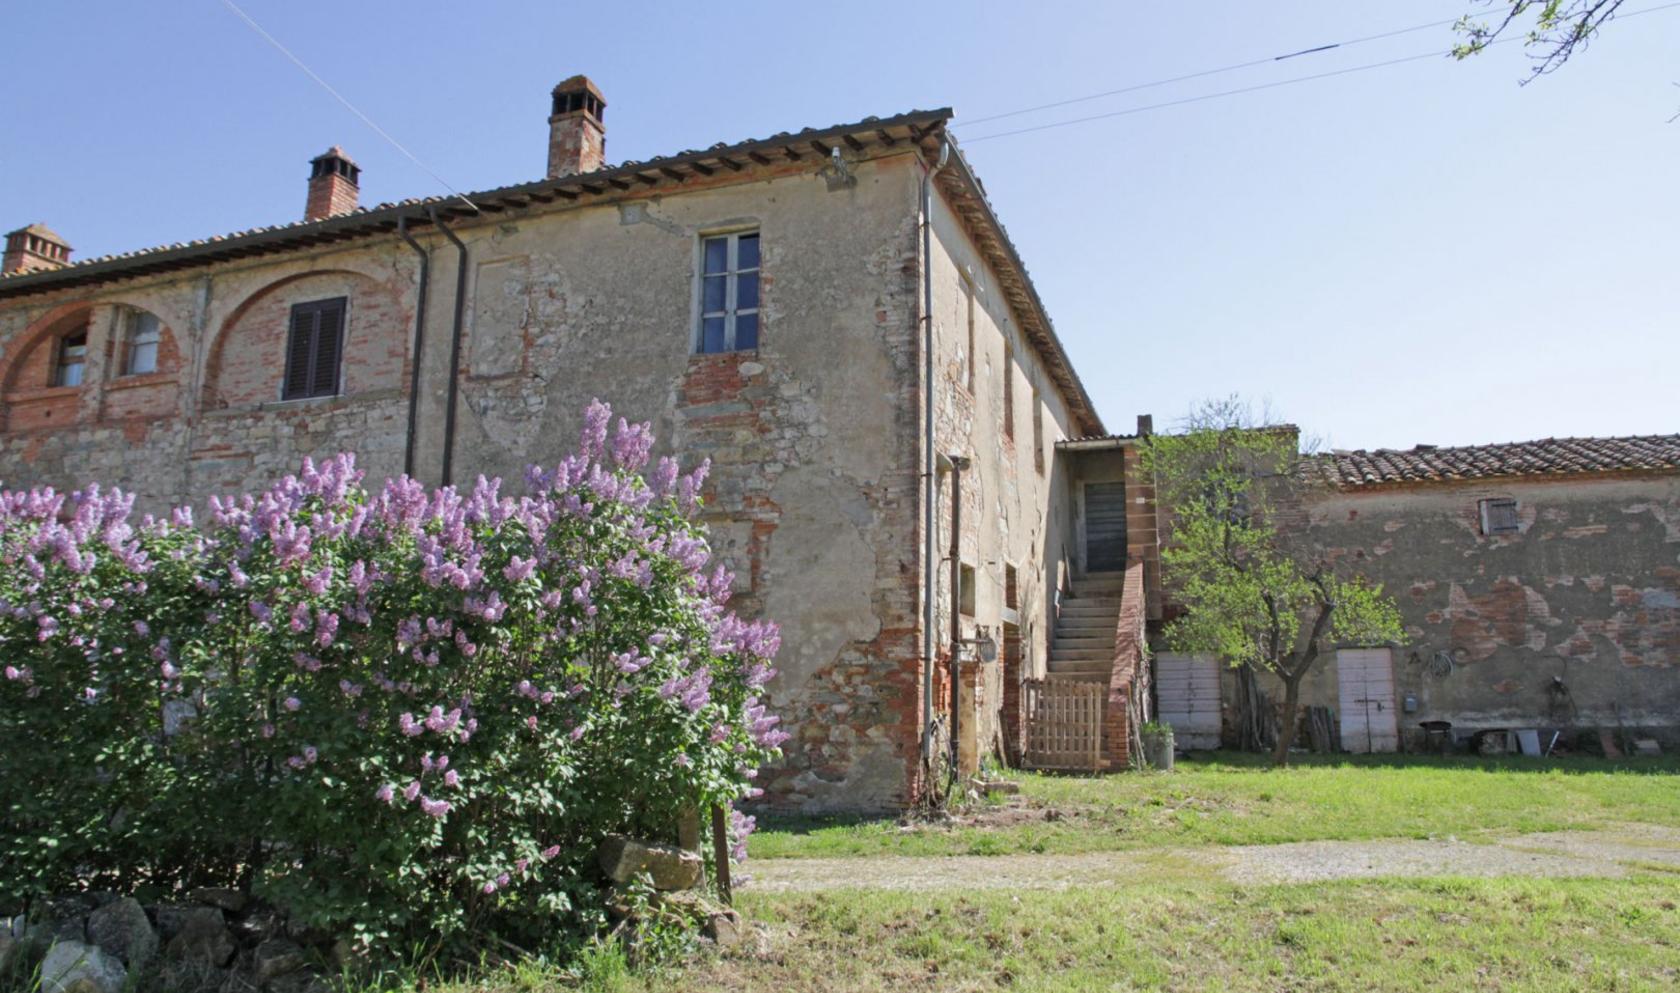 Toscana Immobiliare - Podere in vendita in aperta campagna, composto da 11 ha di terreno completamente pianeggiante e da un casale da restaurare.